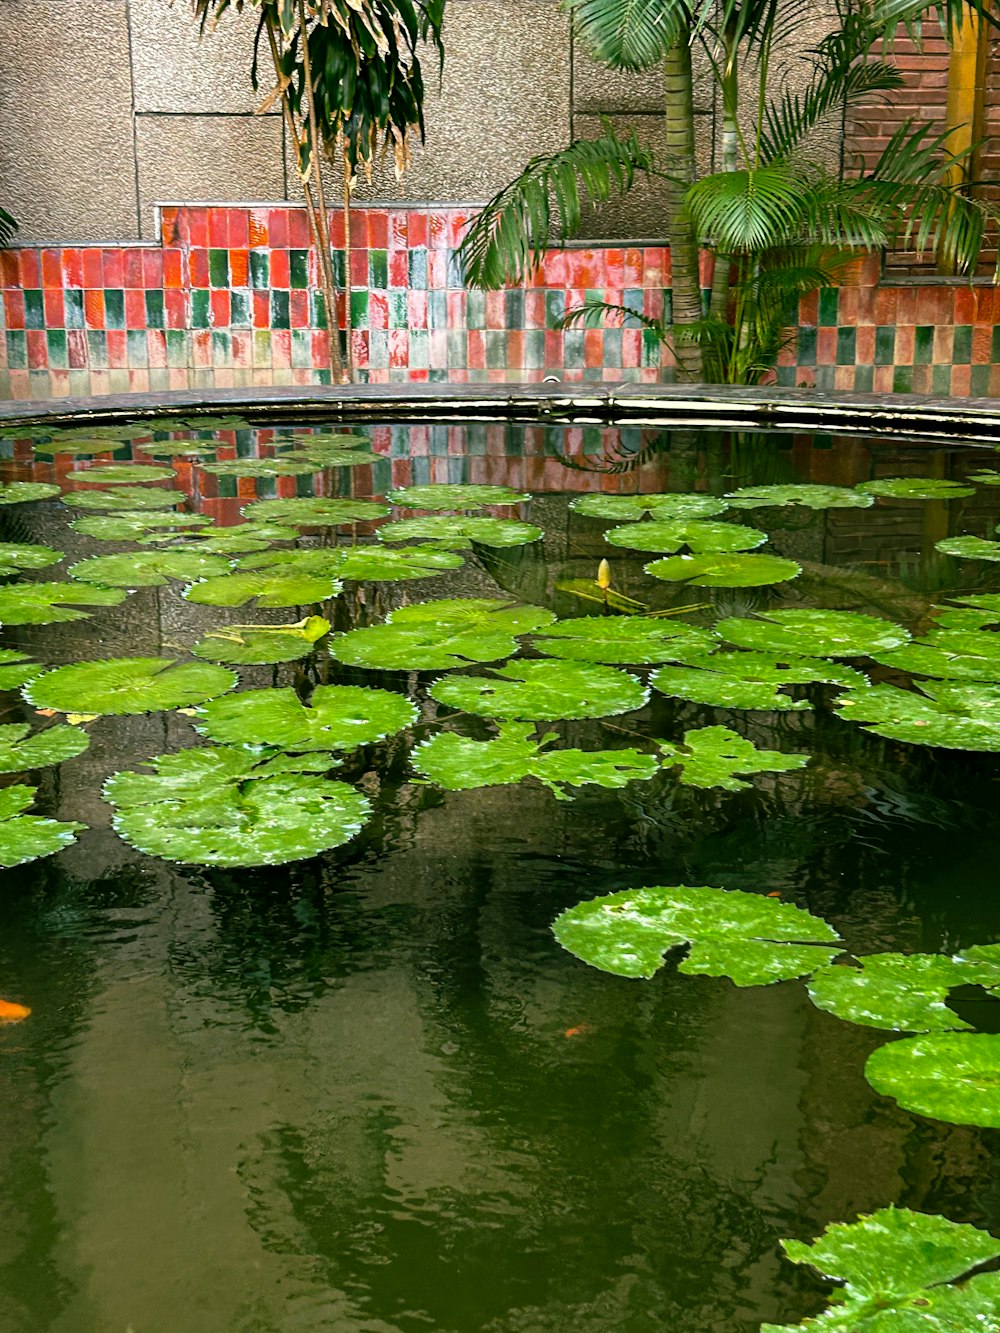 Un estanque lleno de muchos nenúfares verdes